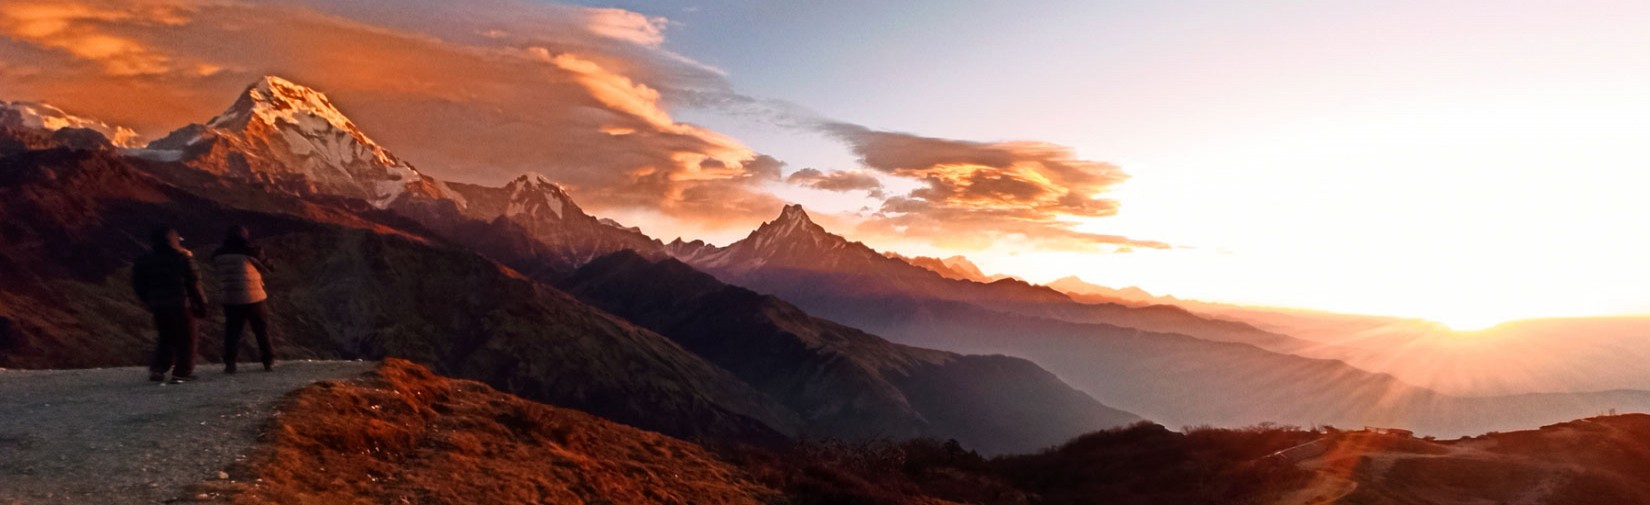 Muldai-View-Point-Trek-short-trek-from-pokhara